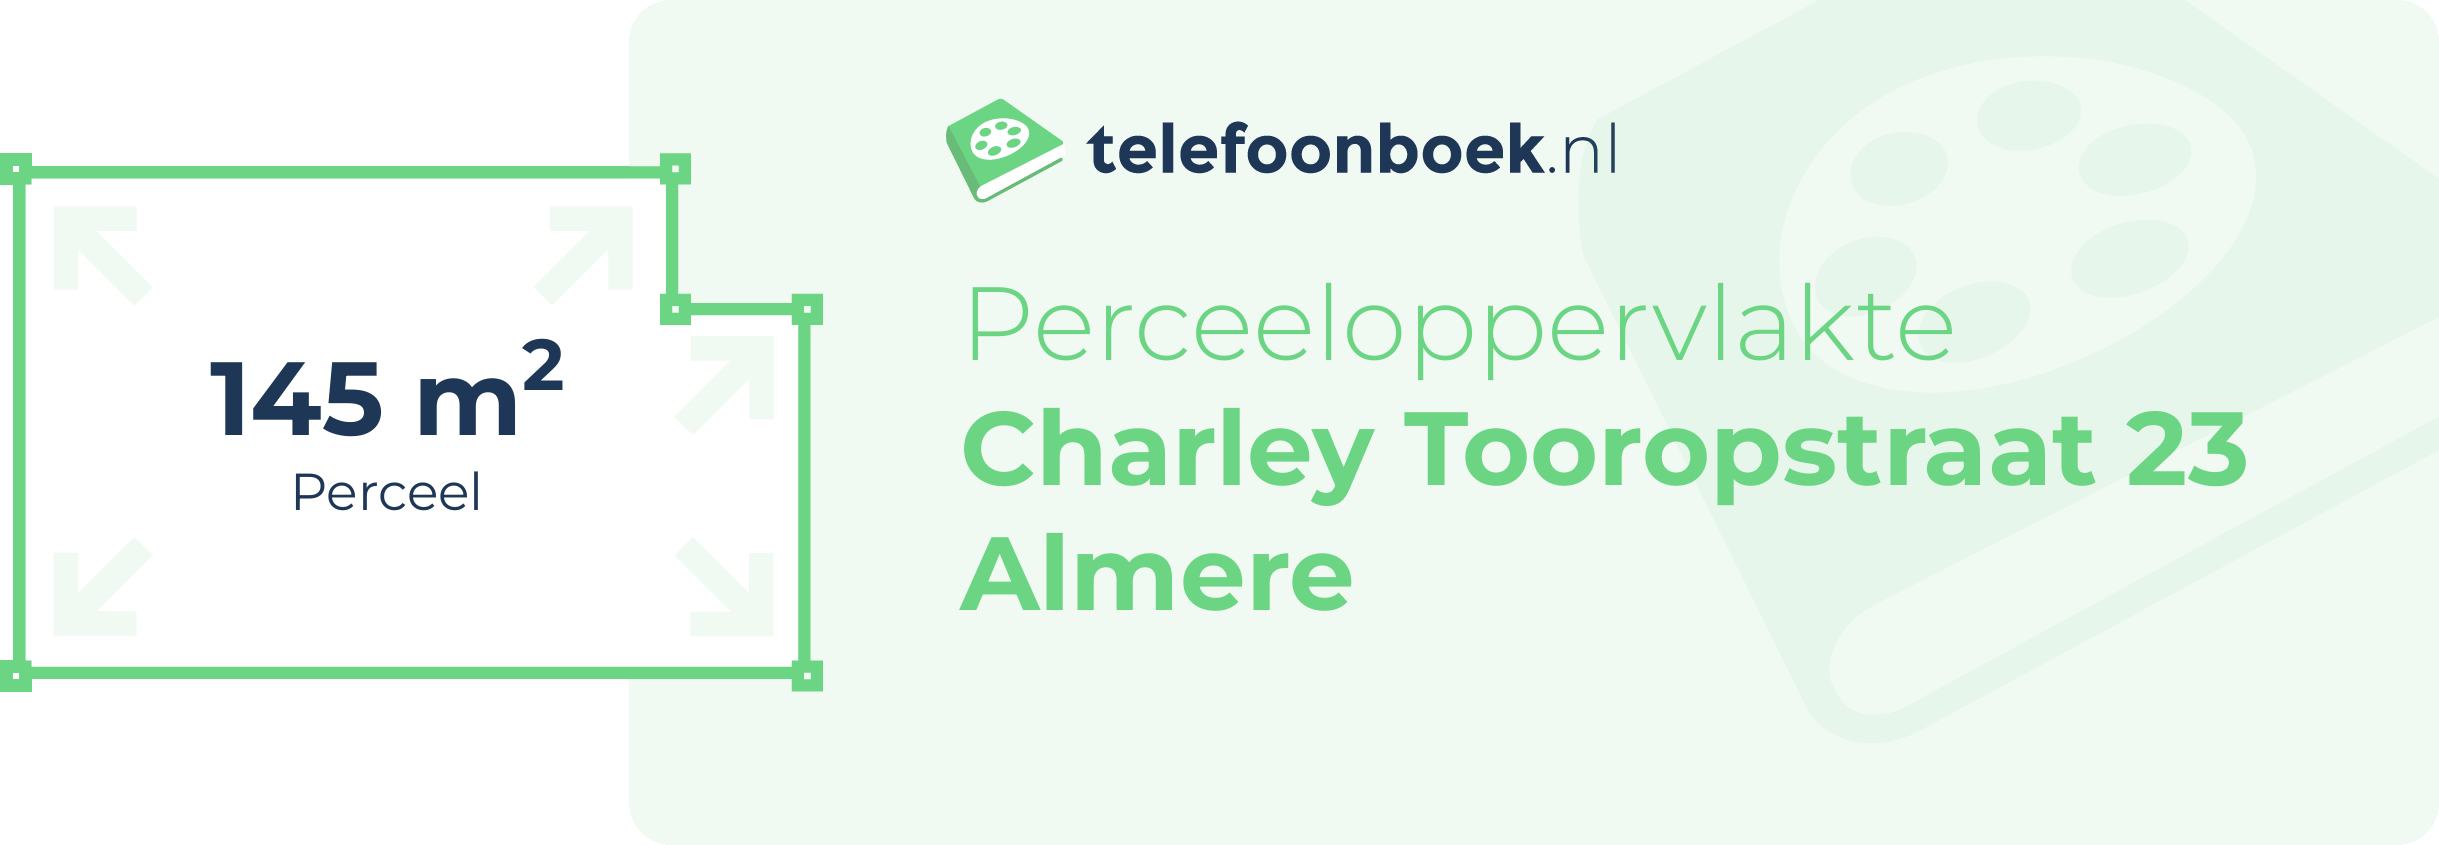 Perceeloppervlakte Charley Tooropstraat 23 Almere